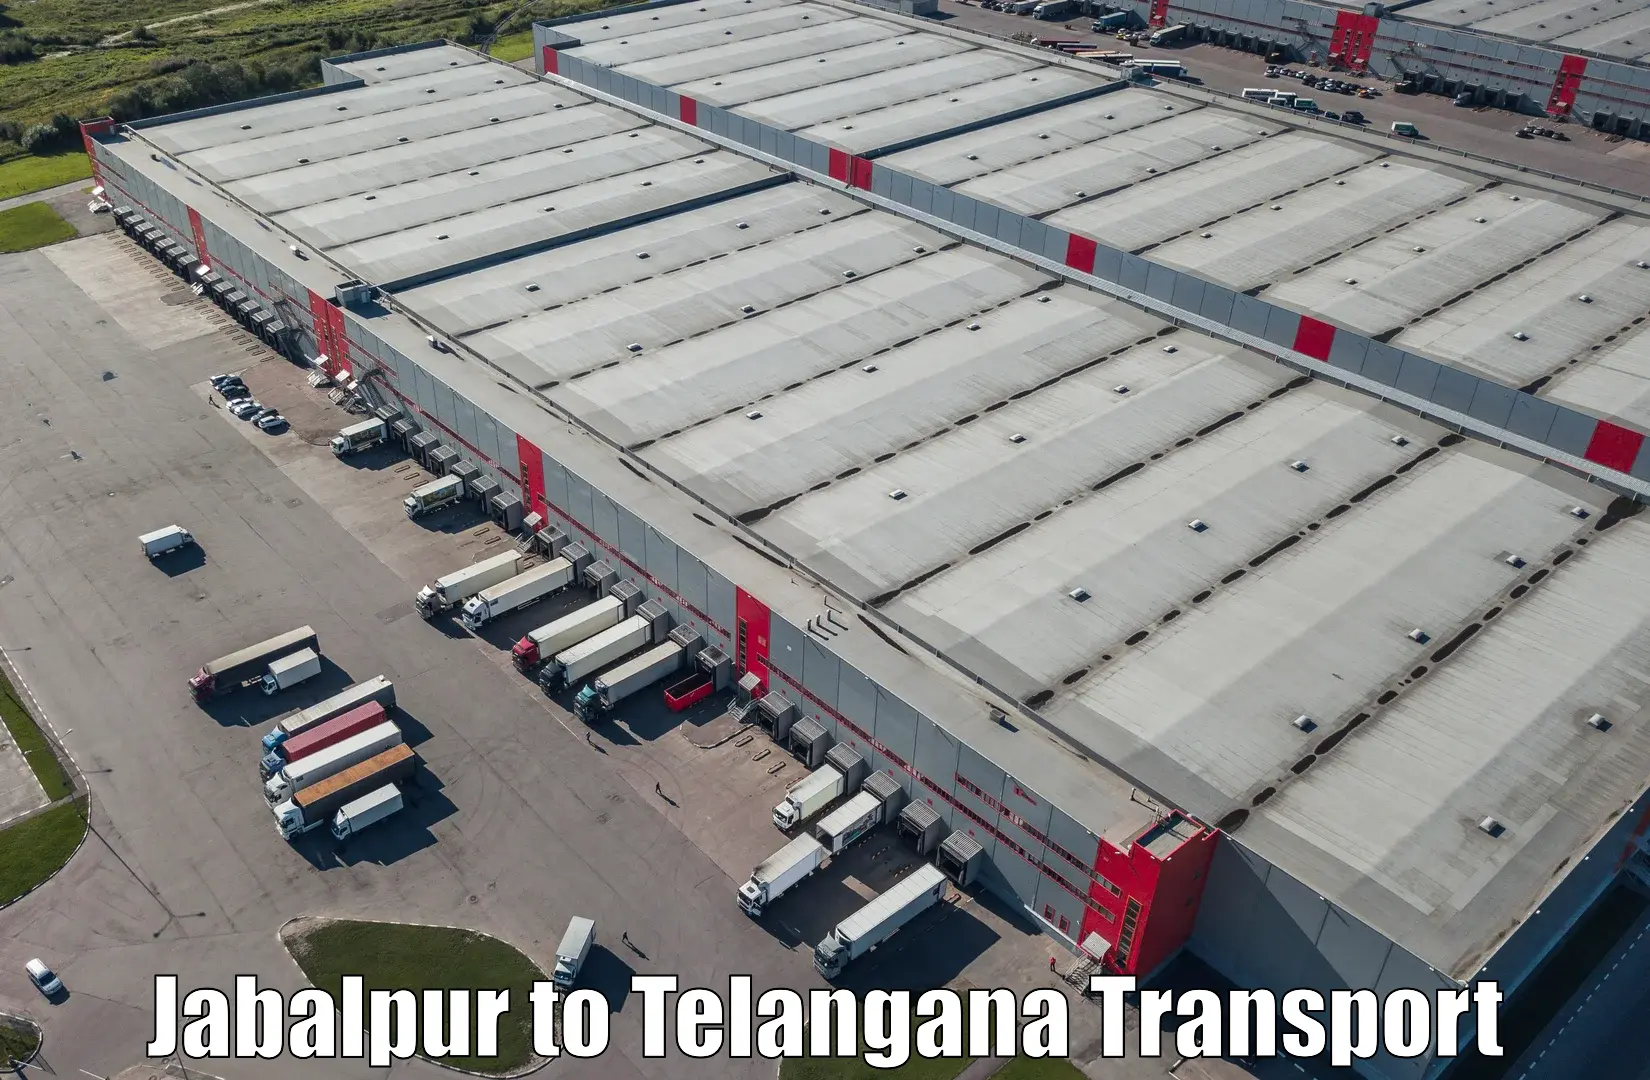 Transport in sharing Jabalpur to Khanapur Nirmal